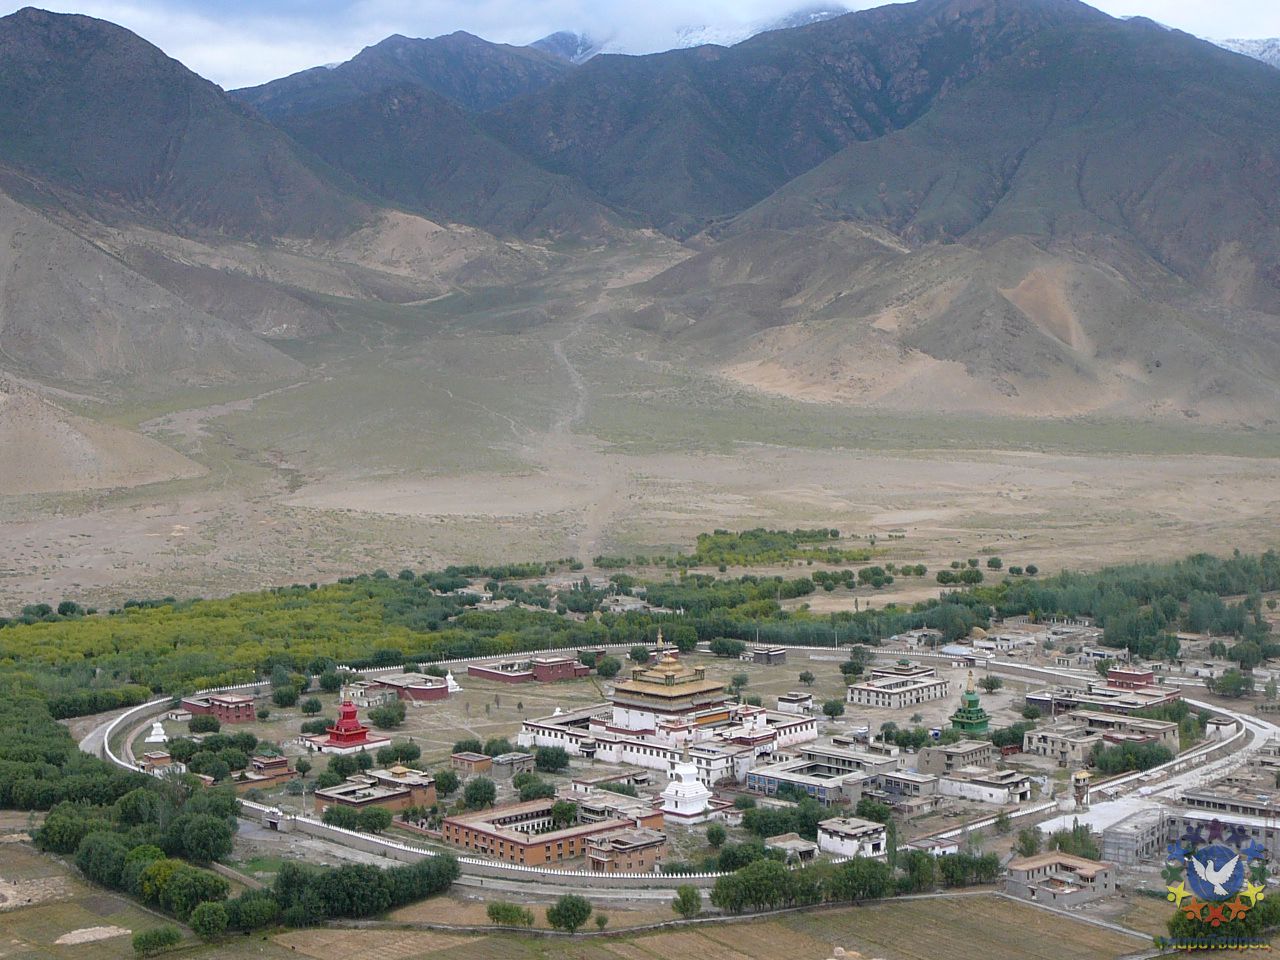 Вид на мандалу монастыря Самье. - Тибет 2006. Фотовоспоминание 5 лет спустя.